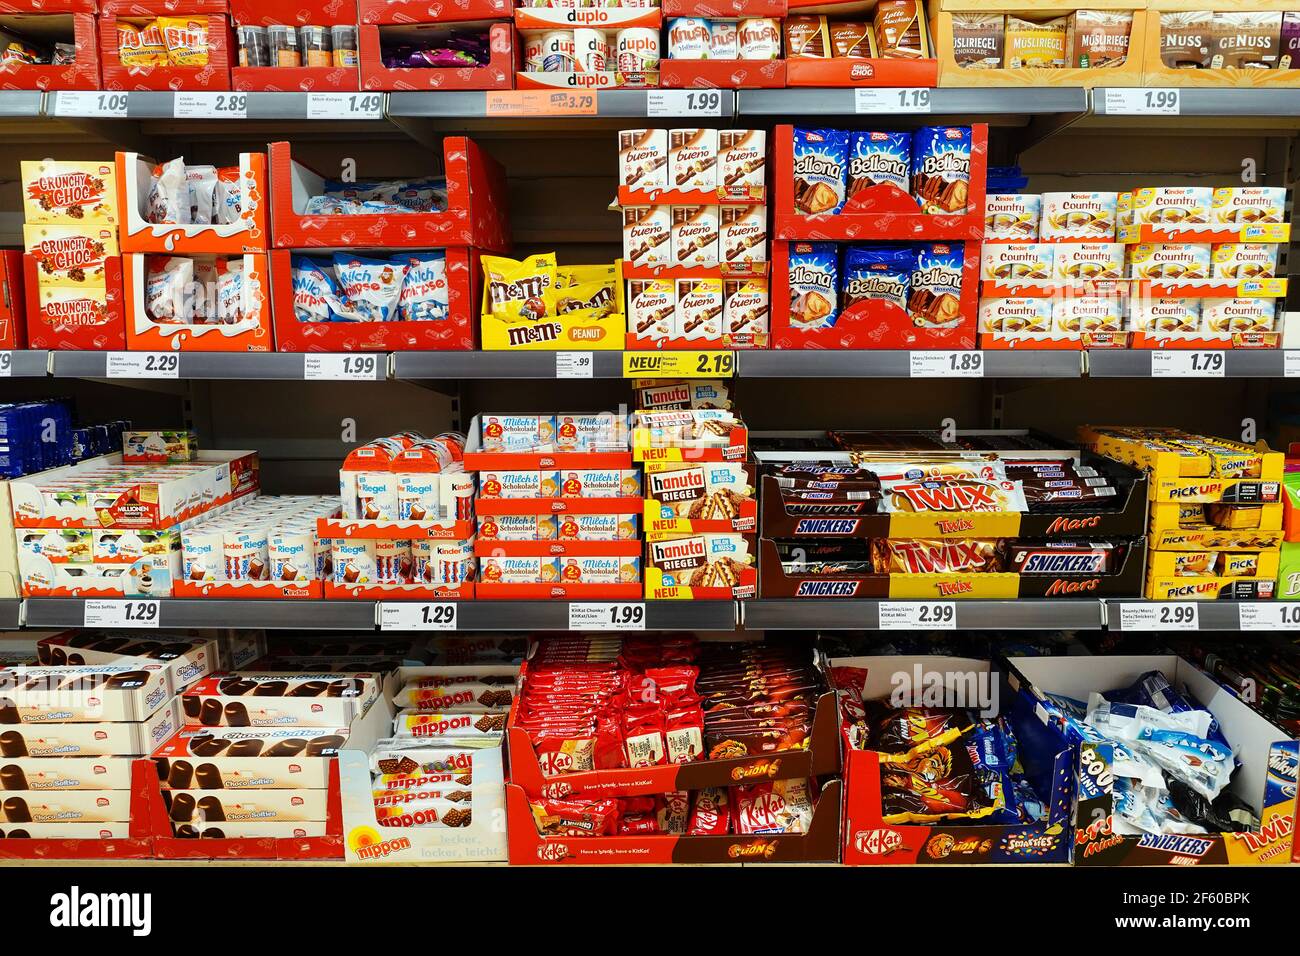 Geneigd zijn actie zal ik doen Confectionery aisle of a Lidl Supermarket Stock Photo - Alamy